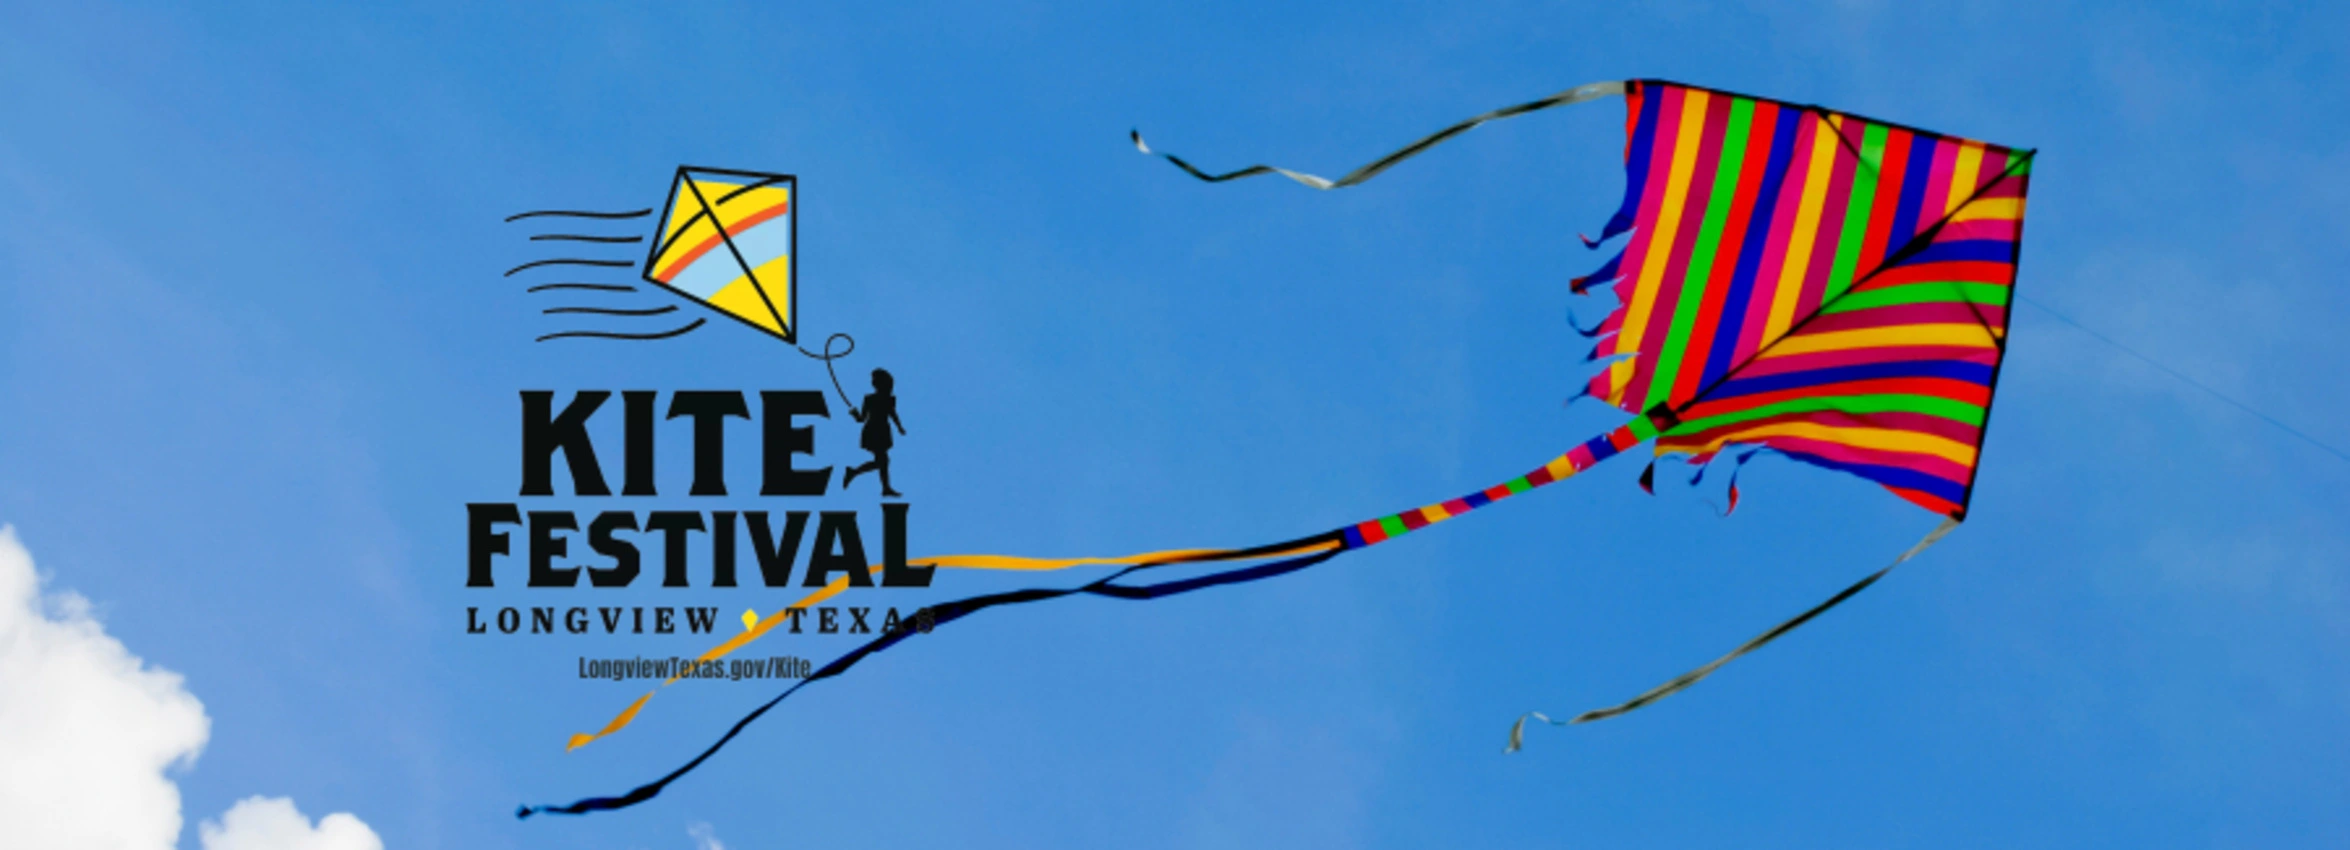 Kite-Festival_Desktop_ET